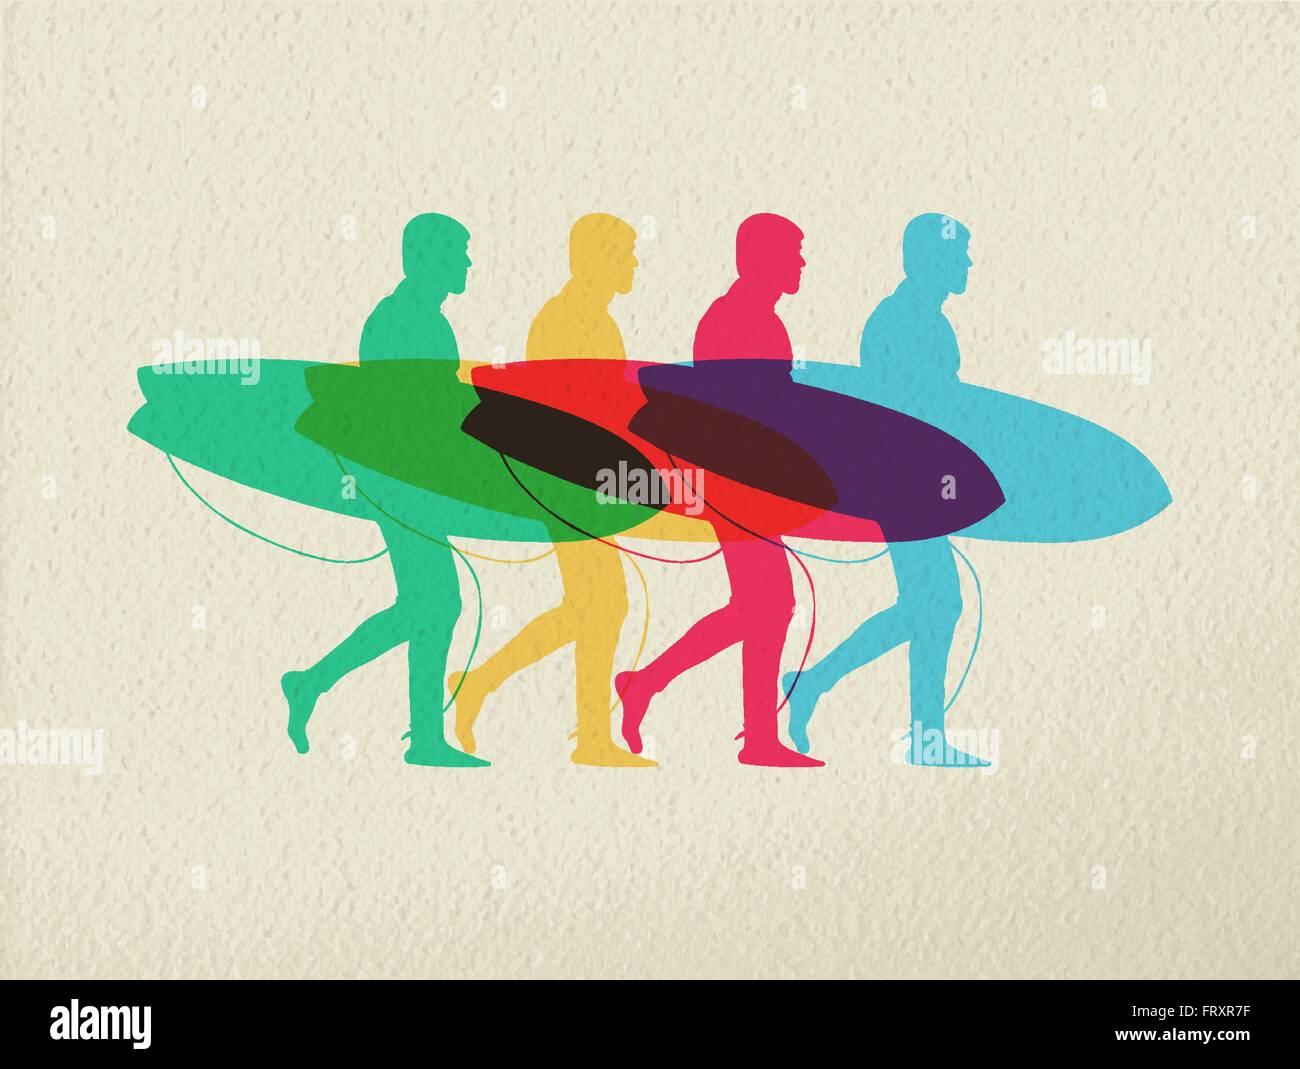 Rendez-vous été surf concept design, sport homme silhouette marcher avec planche de surf. Style colorés sur fond de texture. EPS10 Illustration de Vecteur